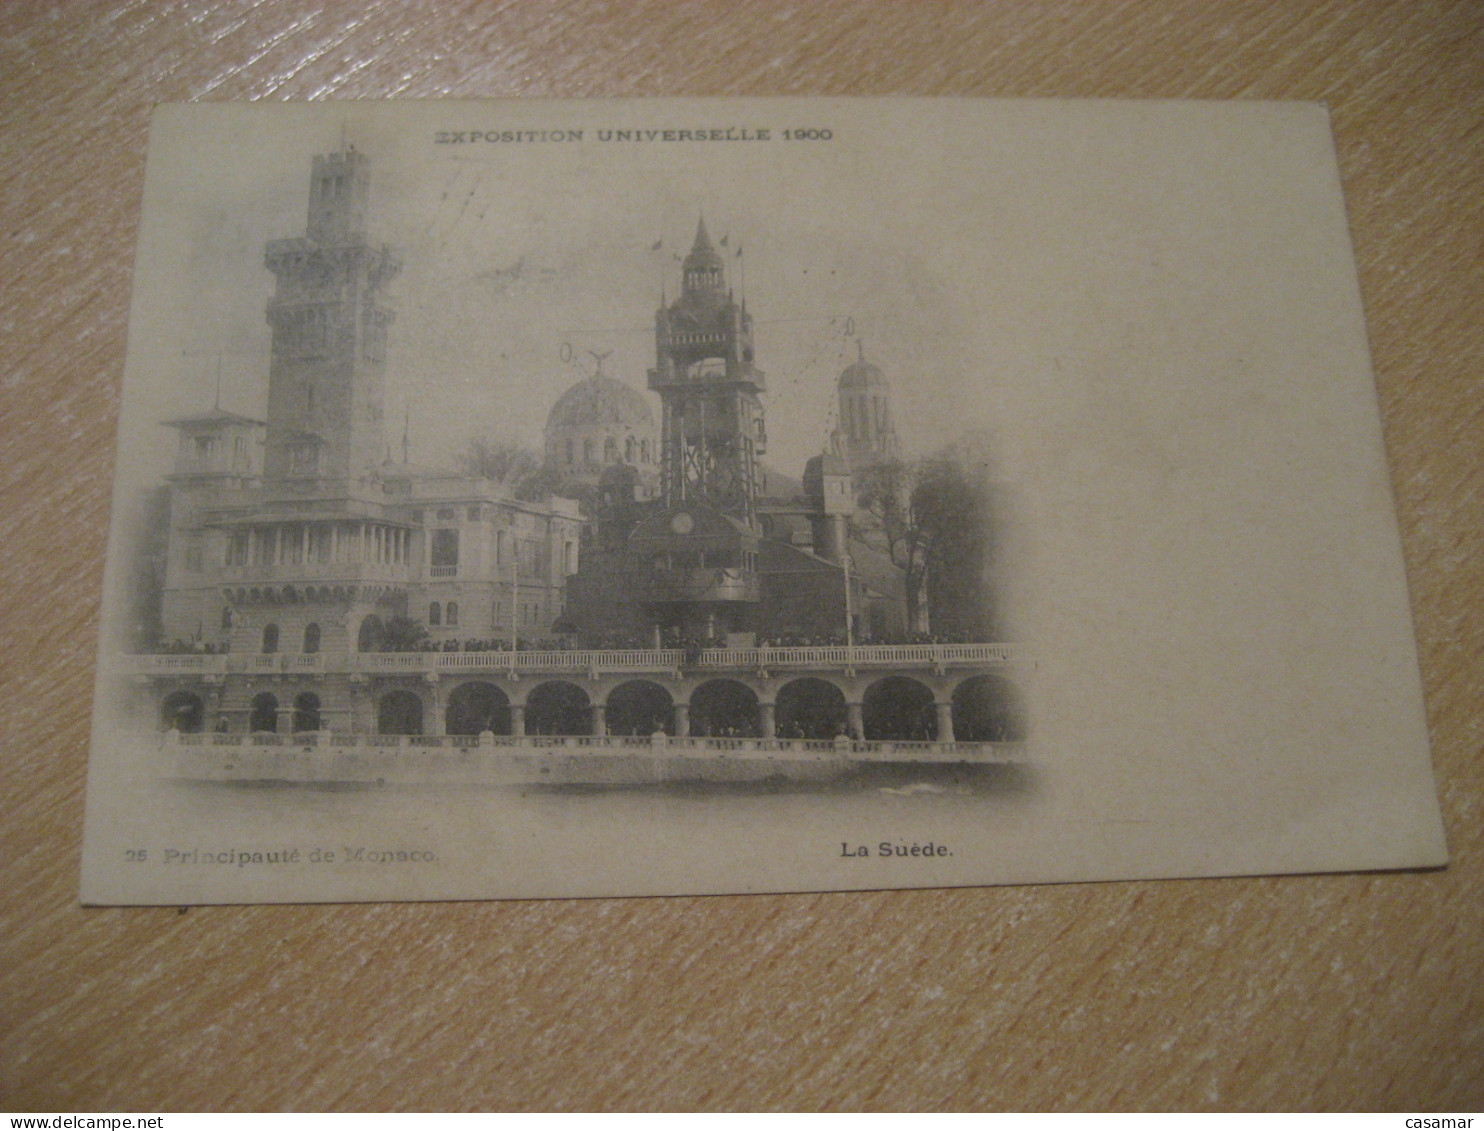 PARIS 1900 Universal Exposition Cancel To Montpellier Principaute De Monaco La Suede Postcard FRANCE Expo Universelle - 1900 – Paris (France)